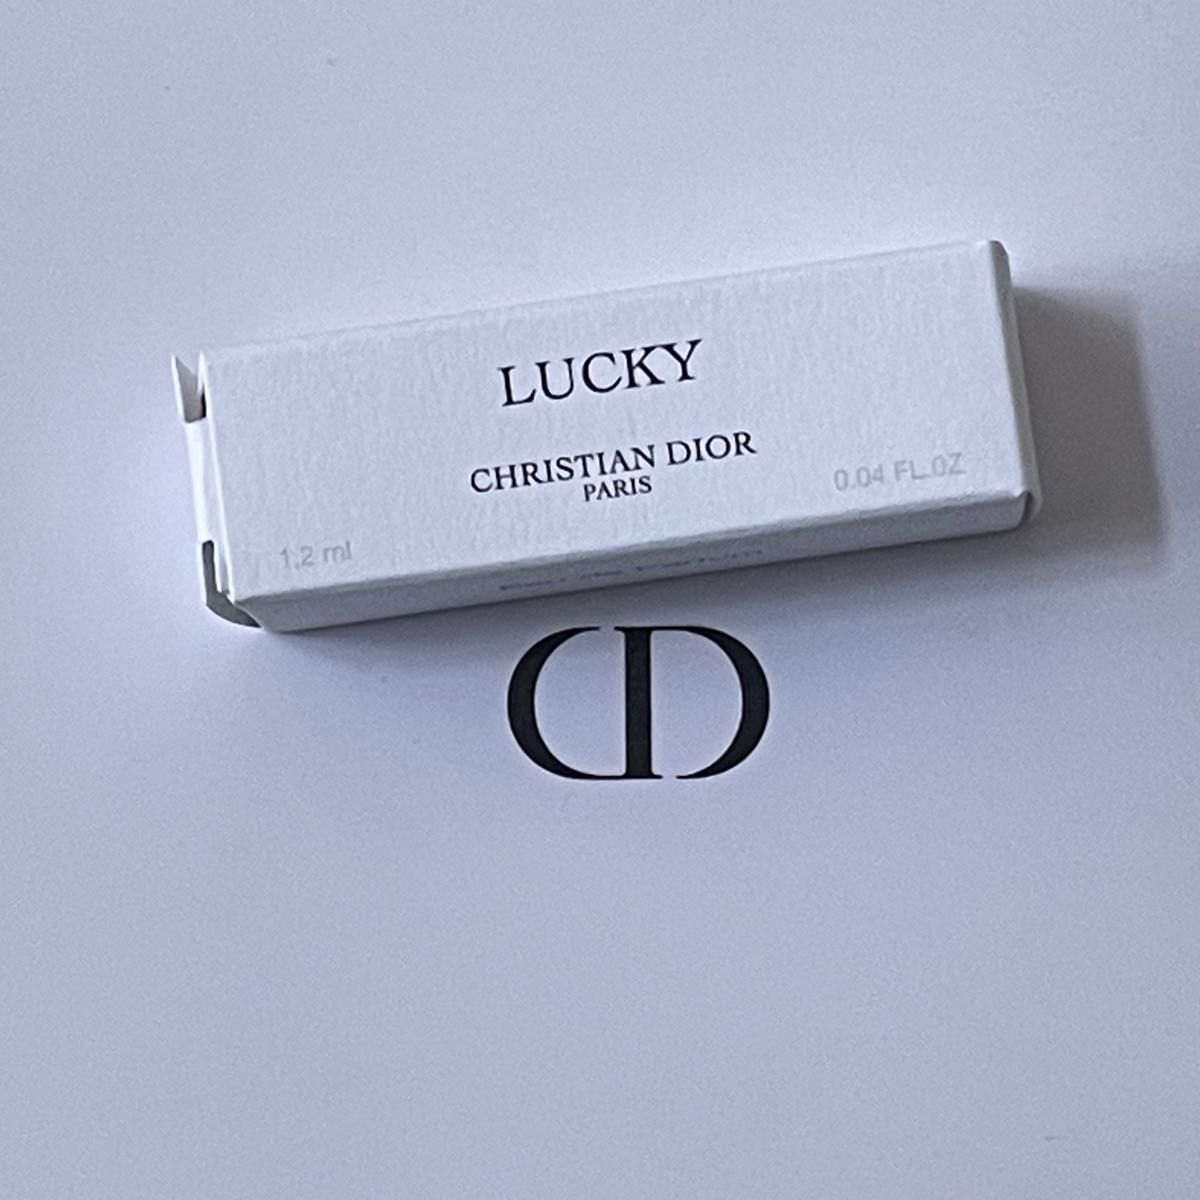 ディオール dior ラッキー 香水 LUCKY メゾンクリスチャンディオール 